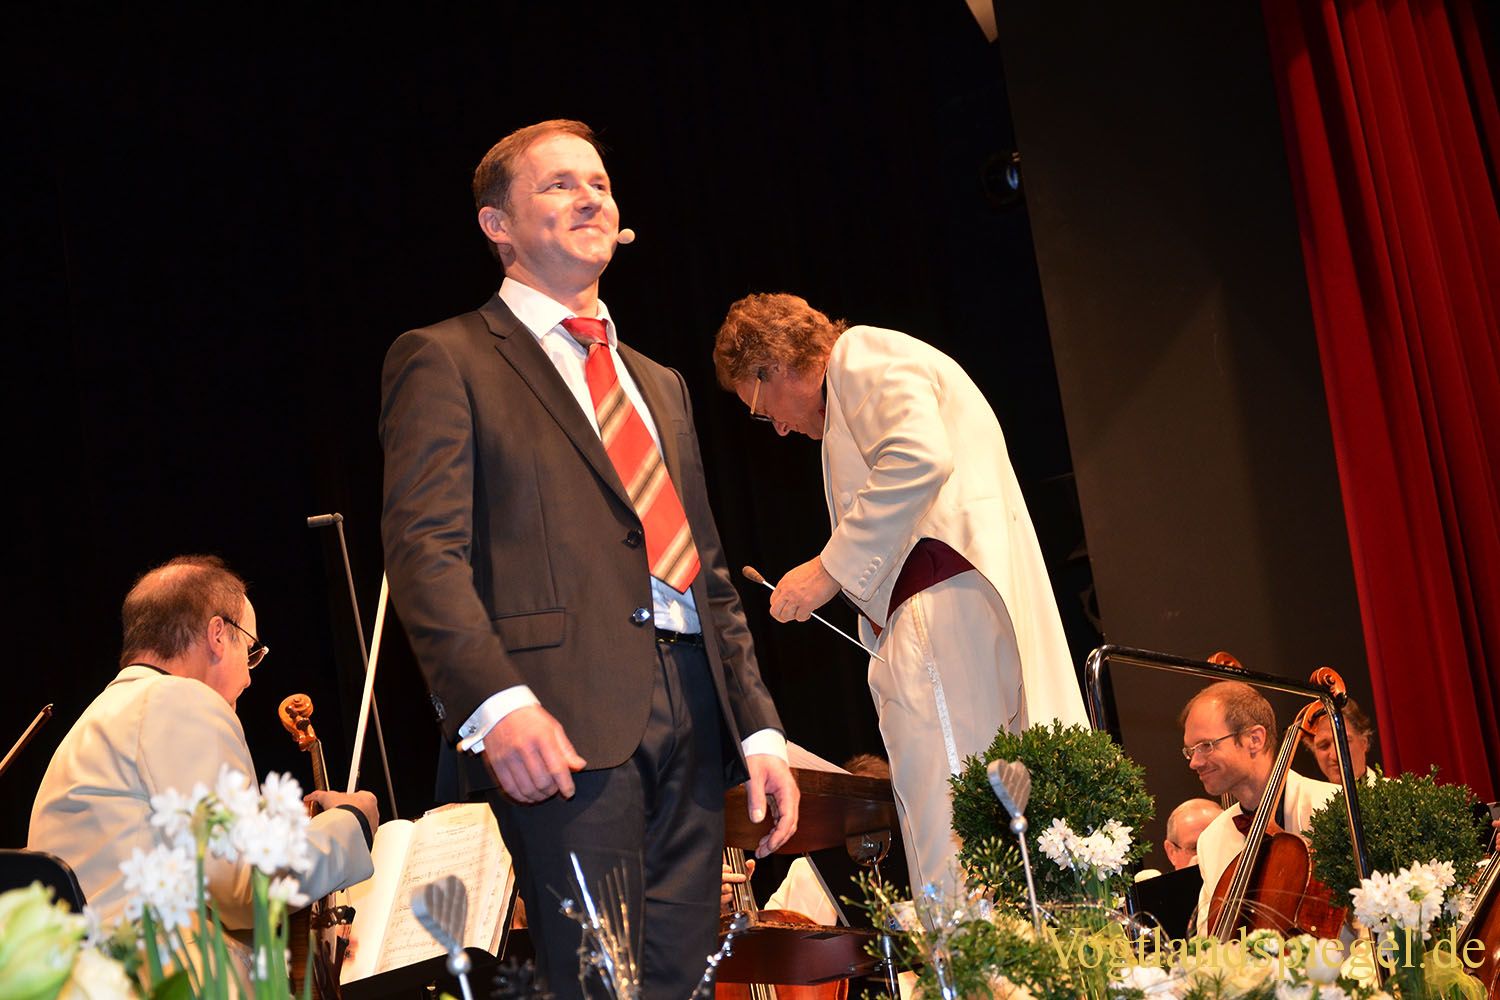 Vogtland Philharmonie begeistert mit drei ausverkauften Silvesterkonzerten